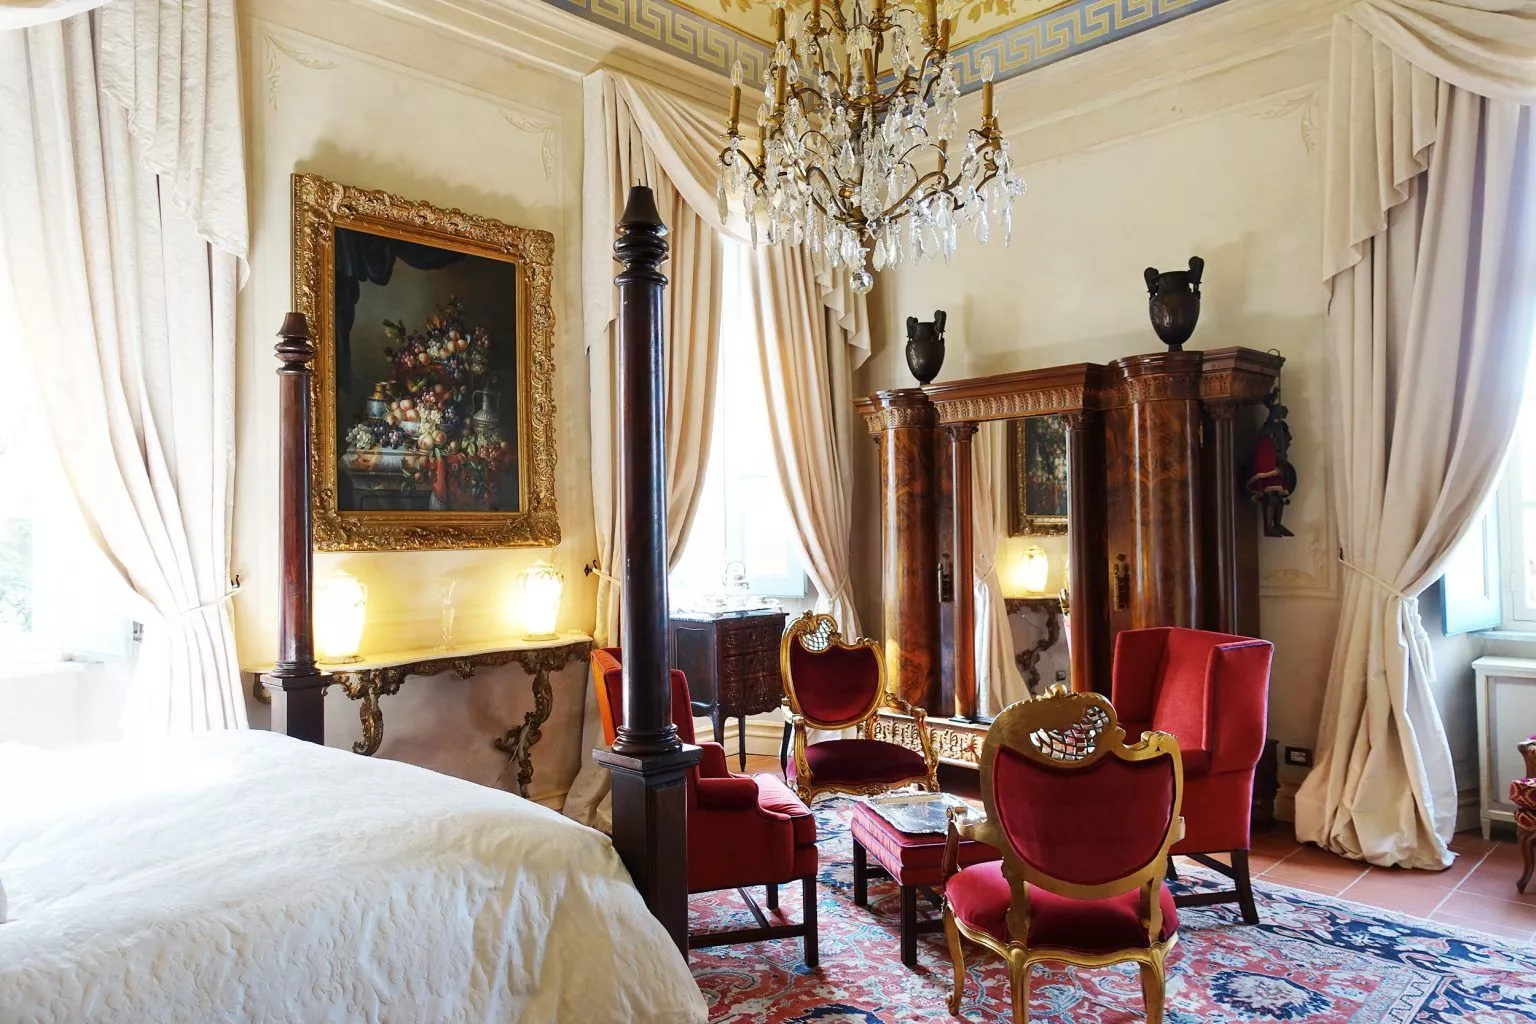 Dukes room at Castello di Casalborgone